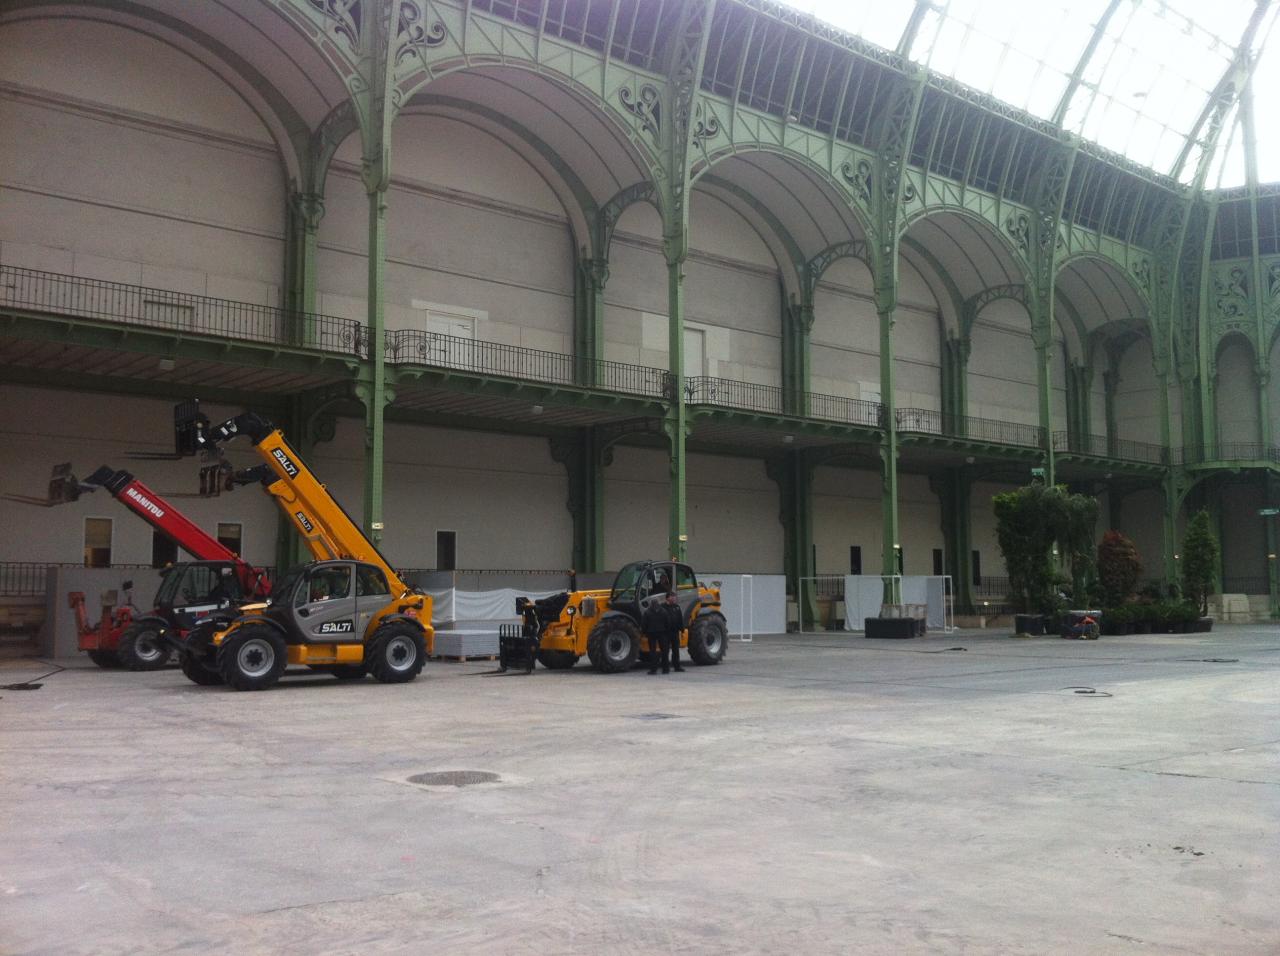 Art du Jardin - Grand Palais 2012